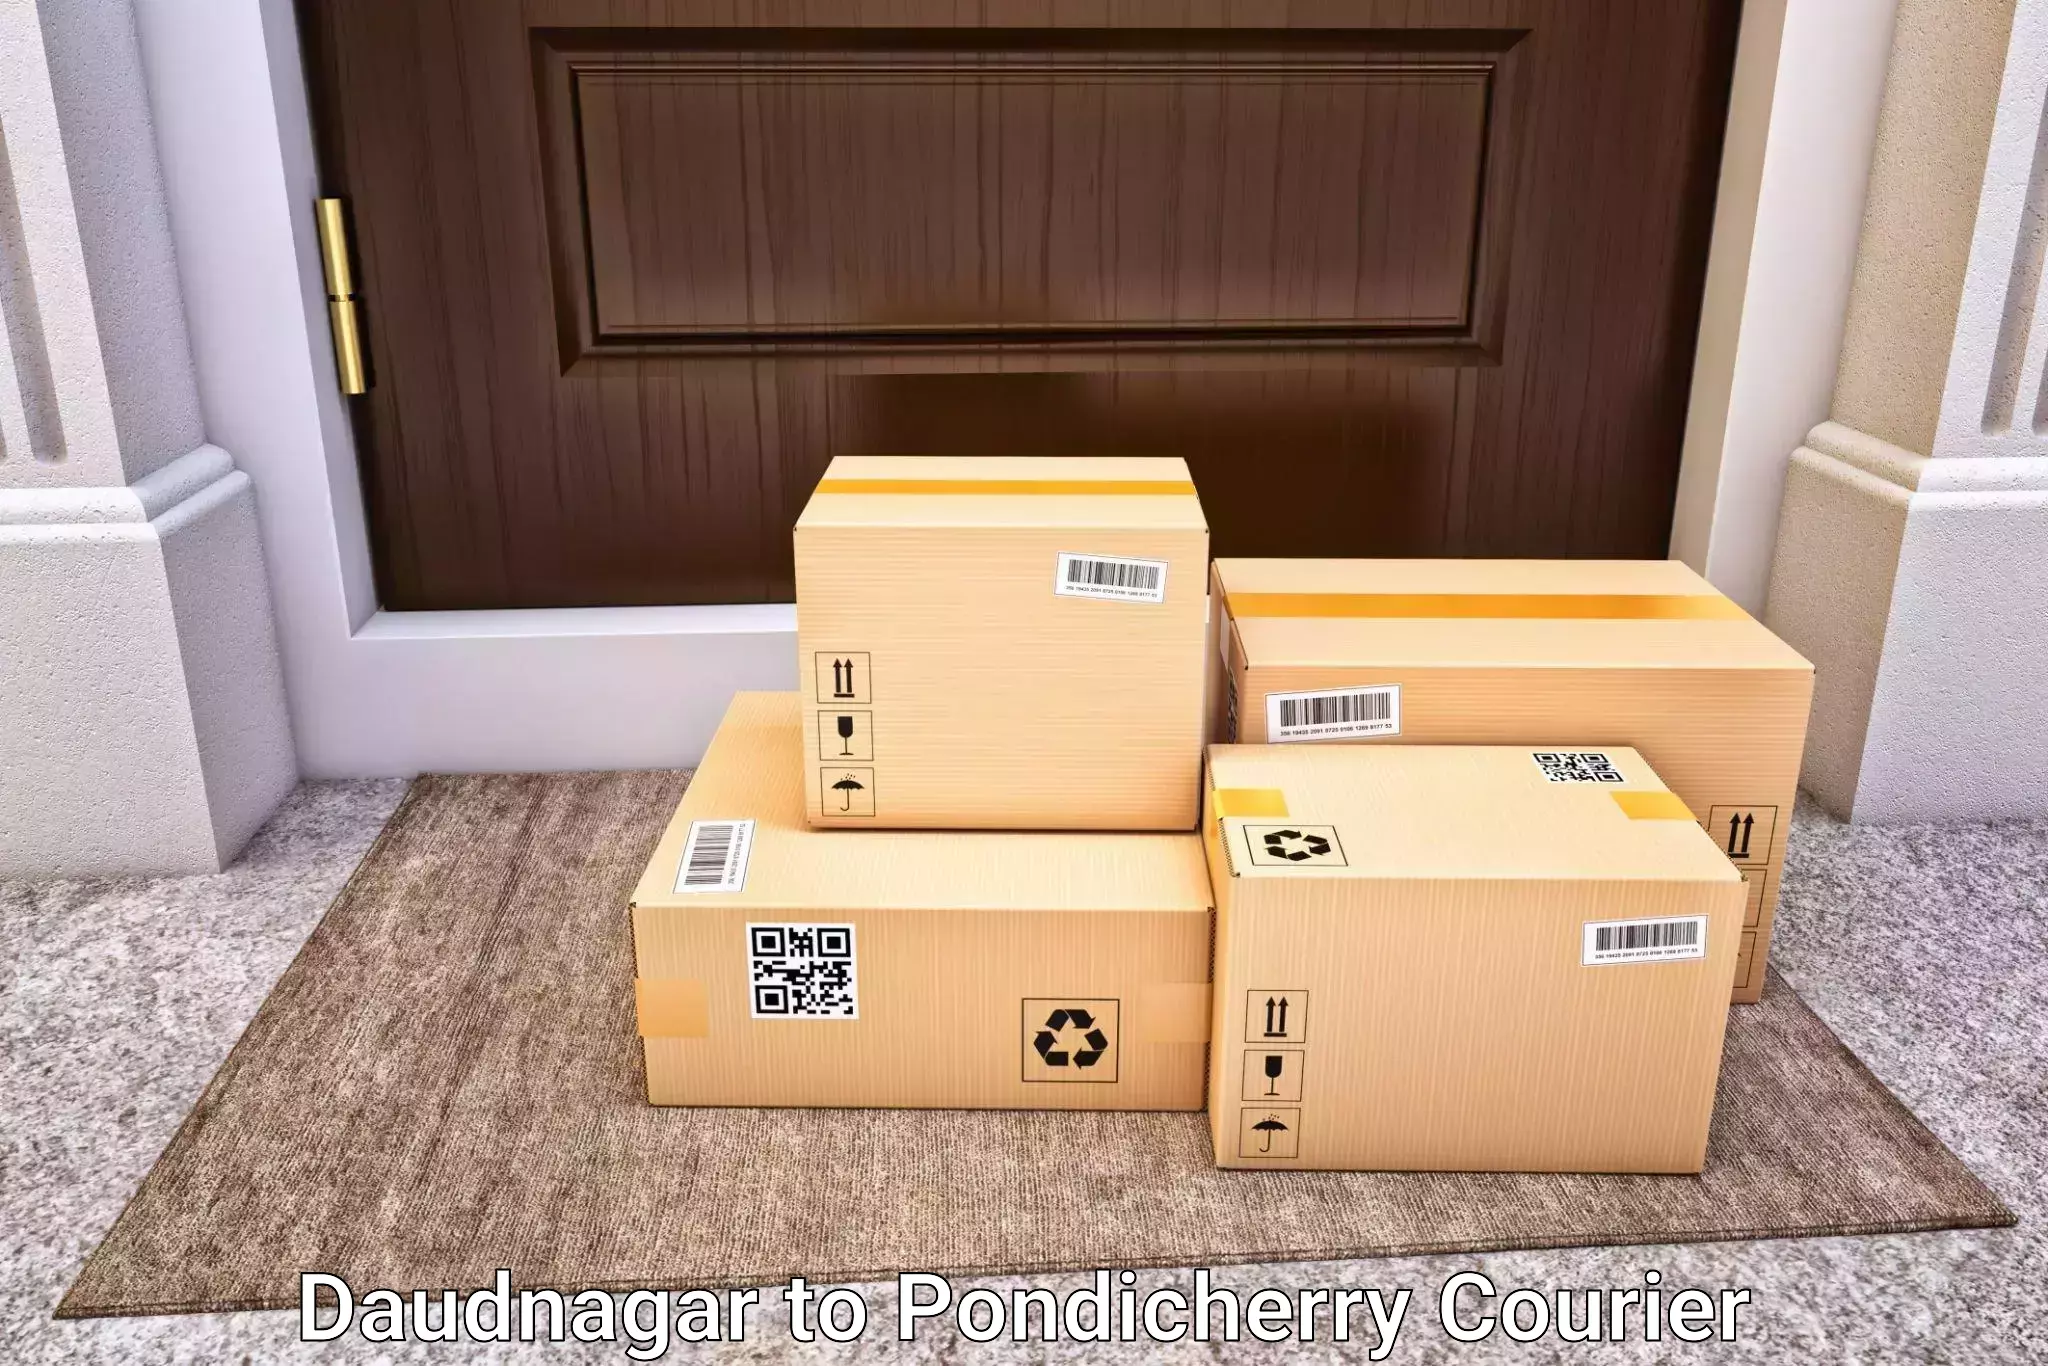 Luggage delivery network Daudnagar to Karaikal